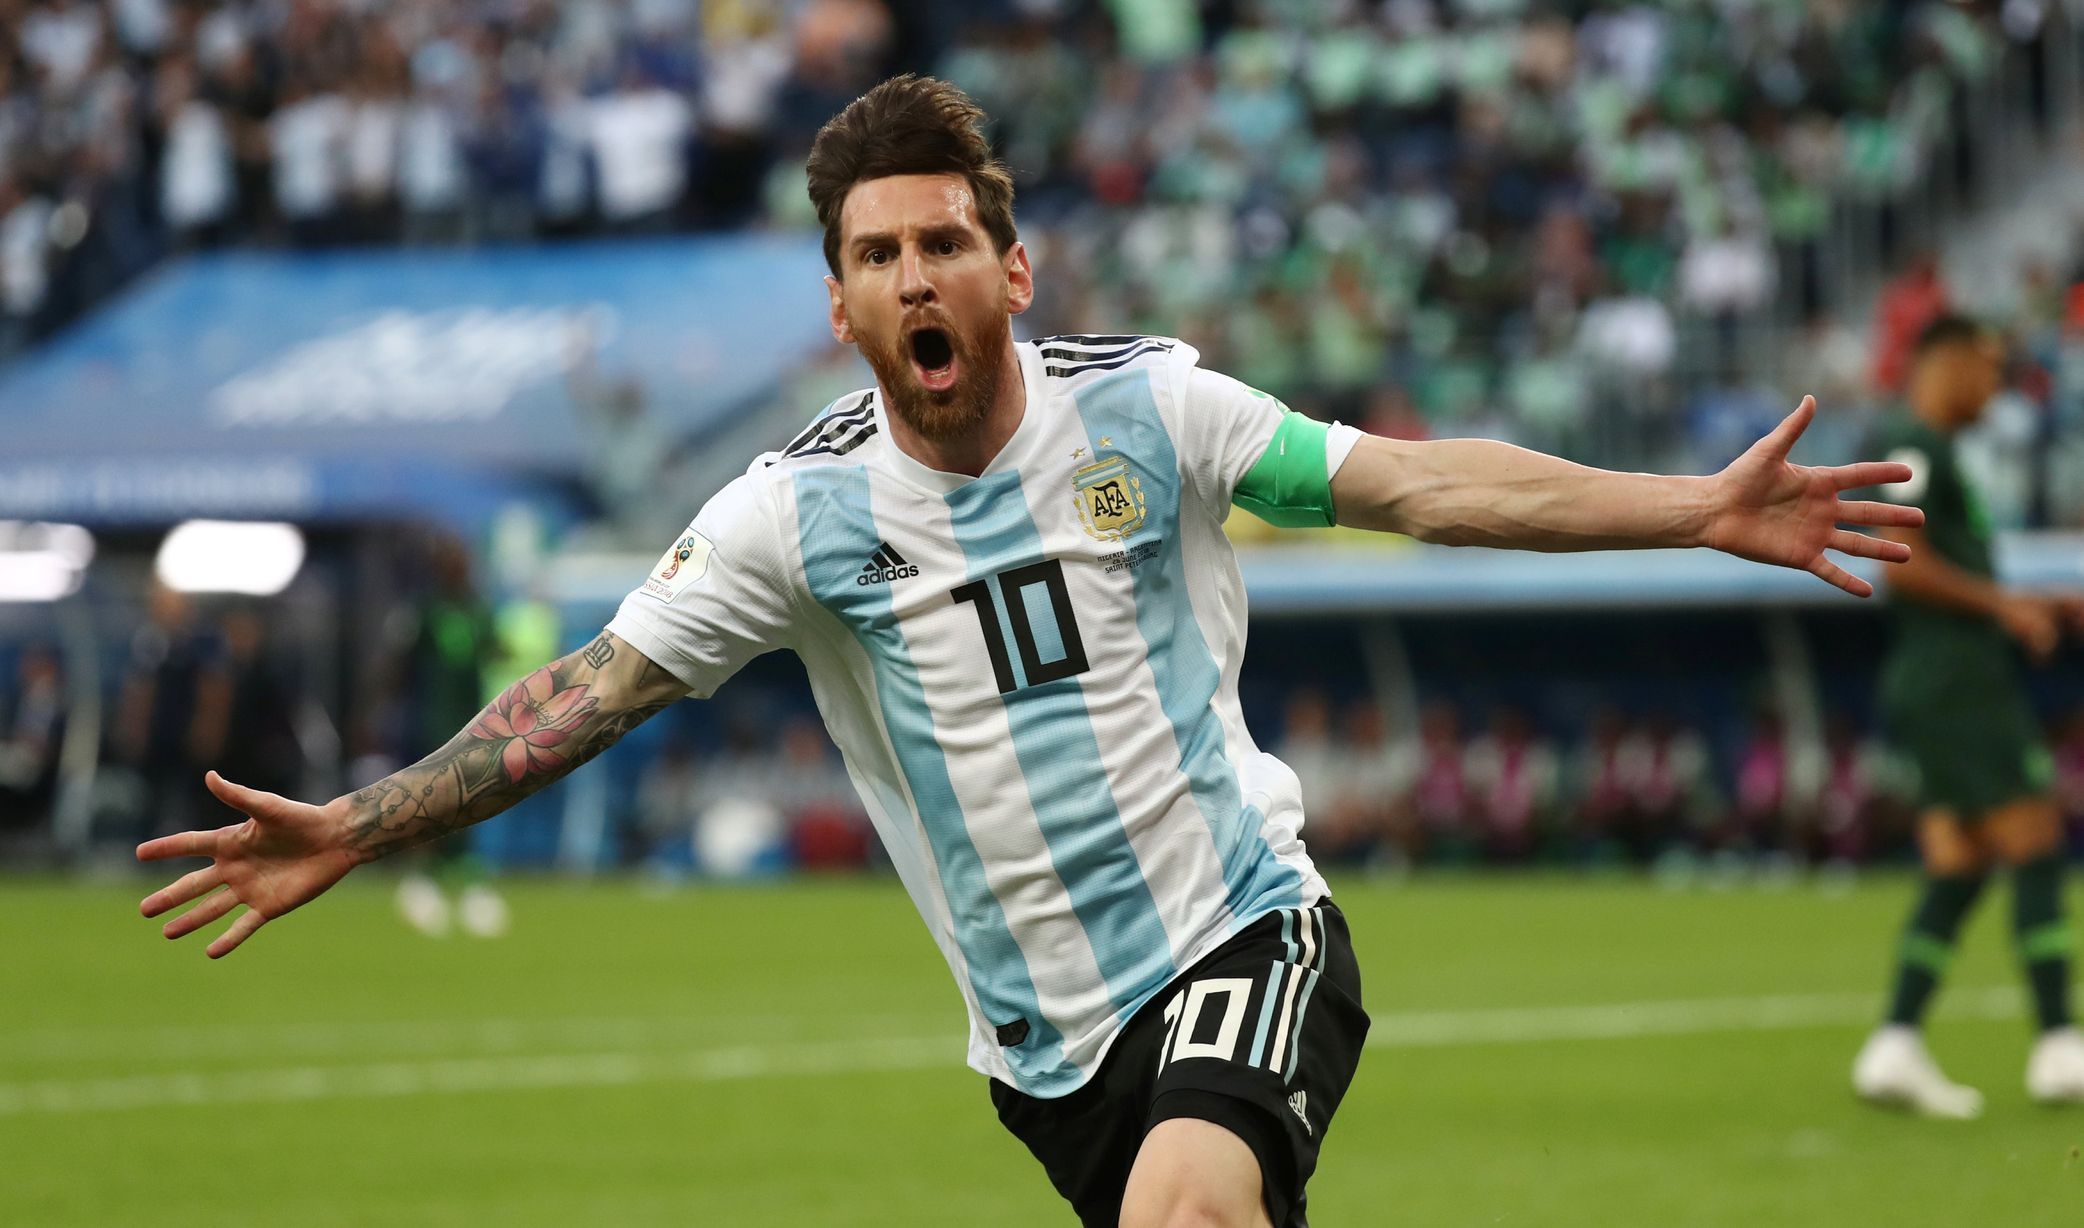 MS ve fotbale 2018: Messi slaví gól proti Nigérii